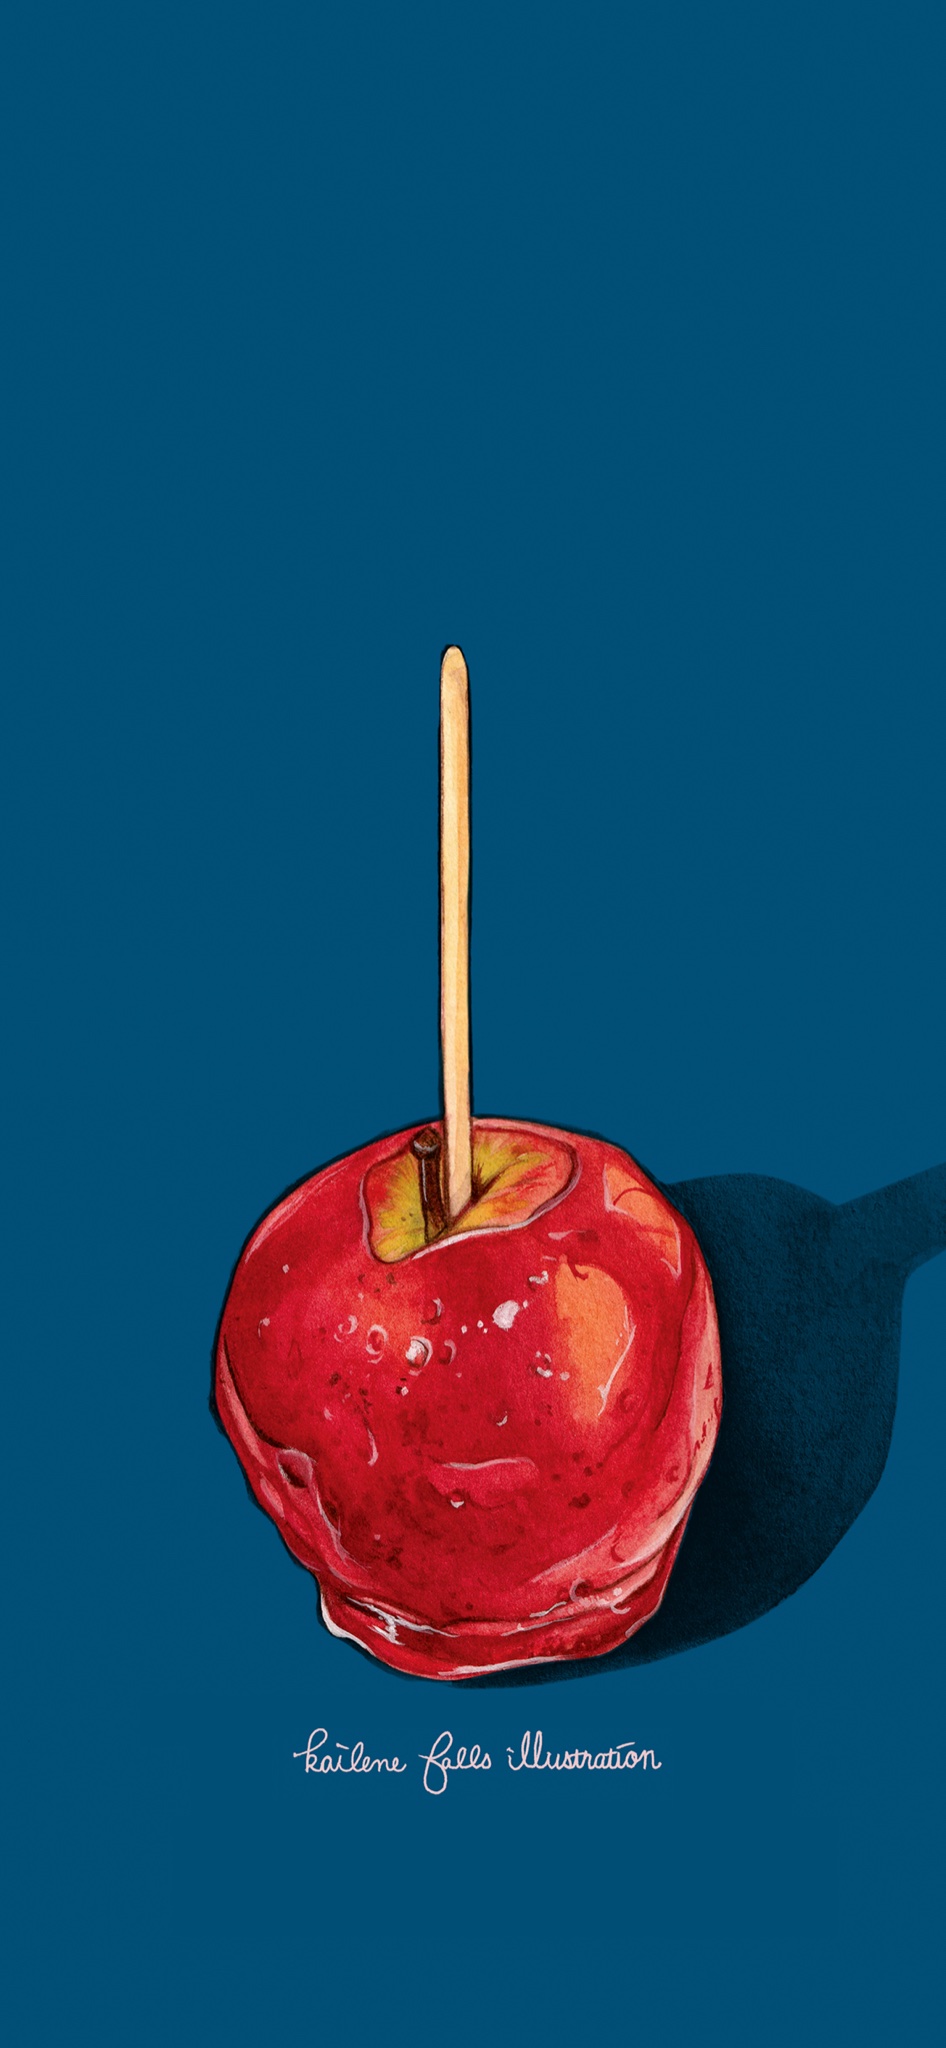 Twitter 上的 ケイリーン イラストをスマホ壁紙にしてみました ベトナムのバインミー とりんご飴です フードイラスト Foodillustration T Co Ofd39rlz0l Twitter